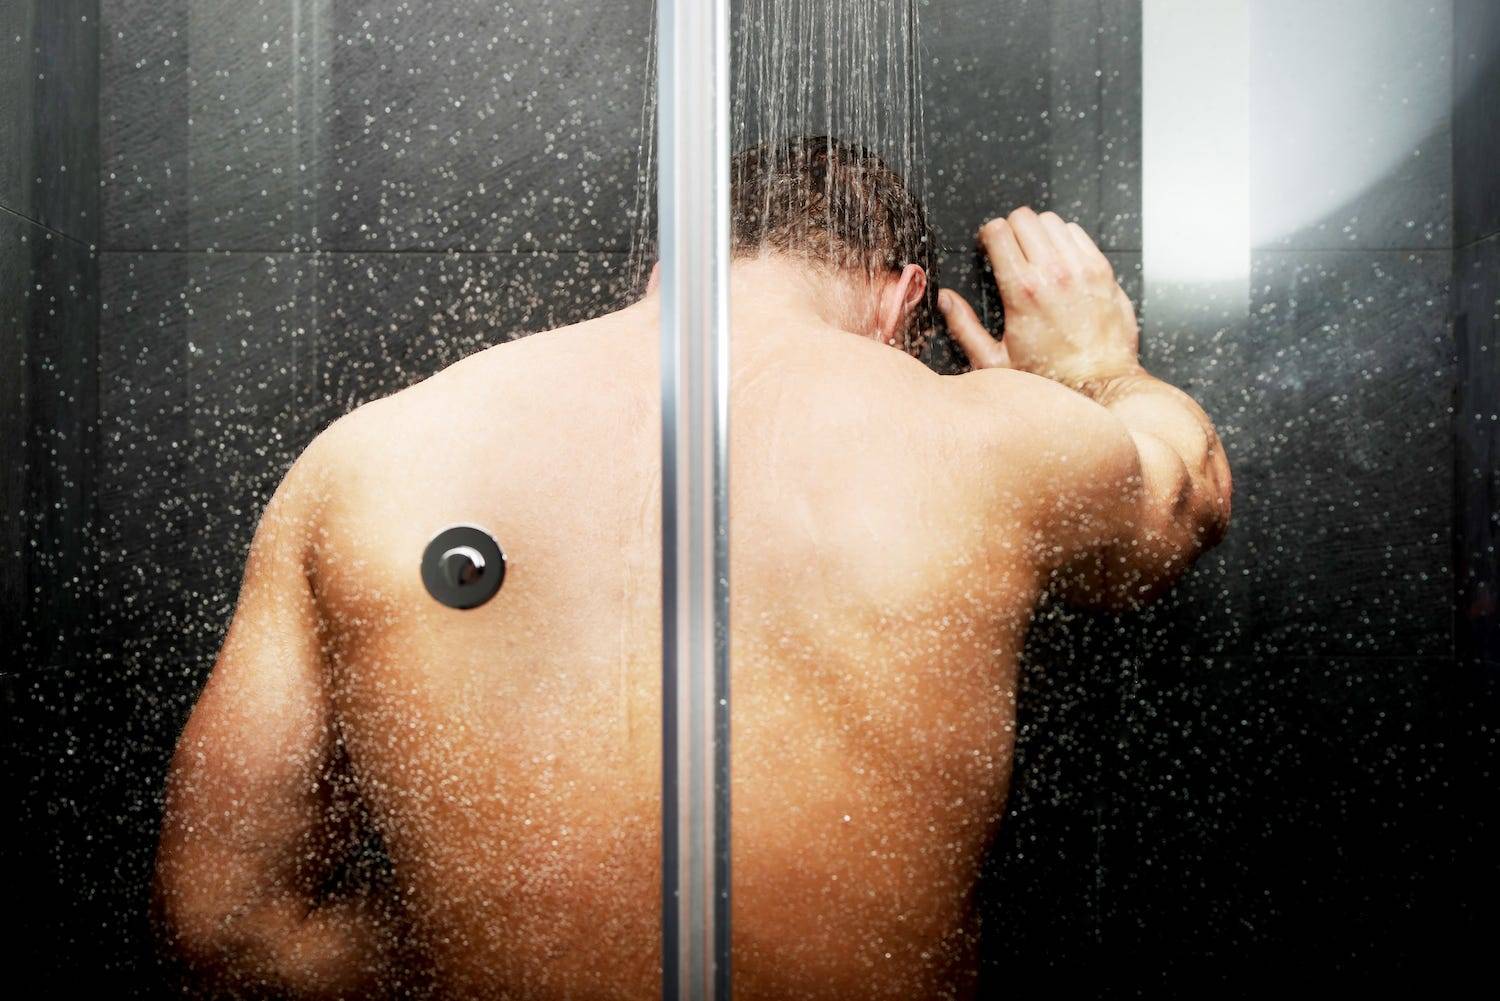 Men shower